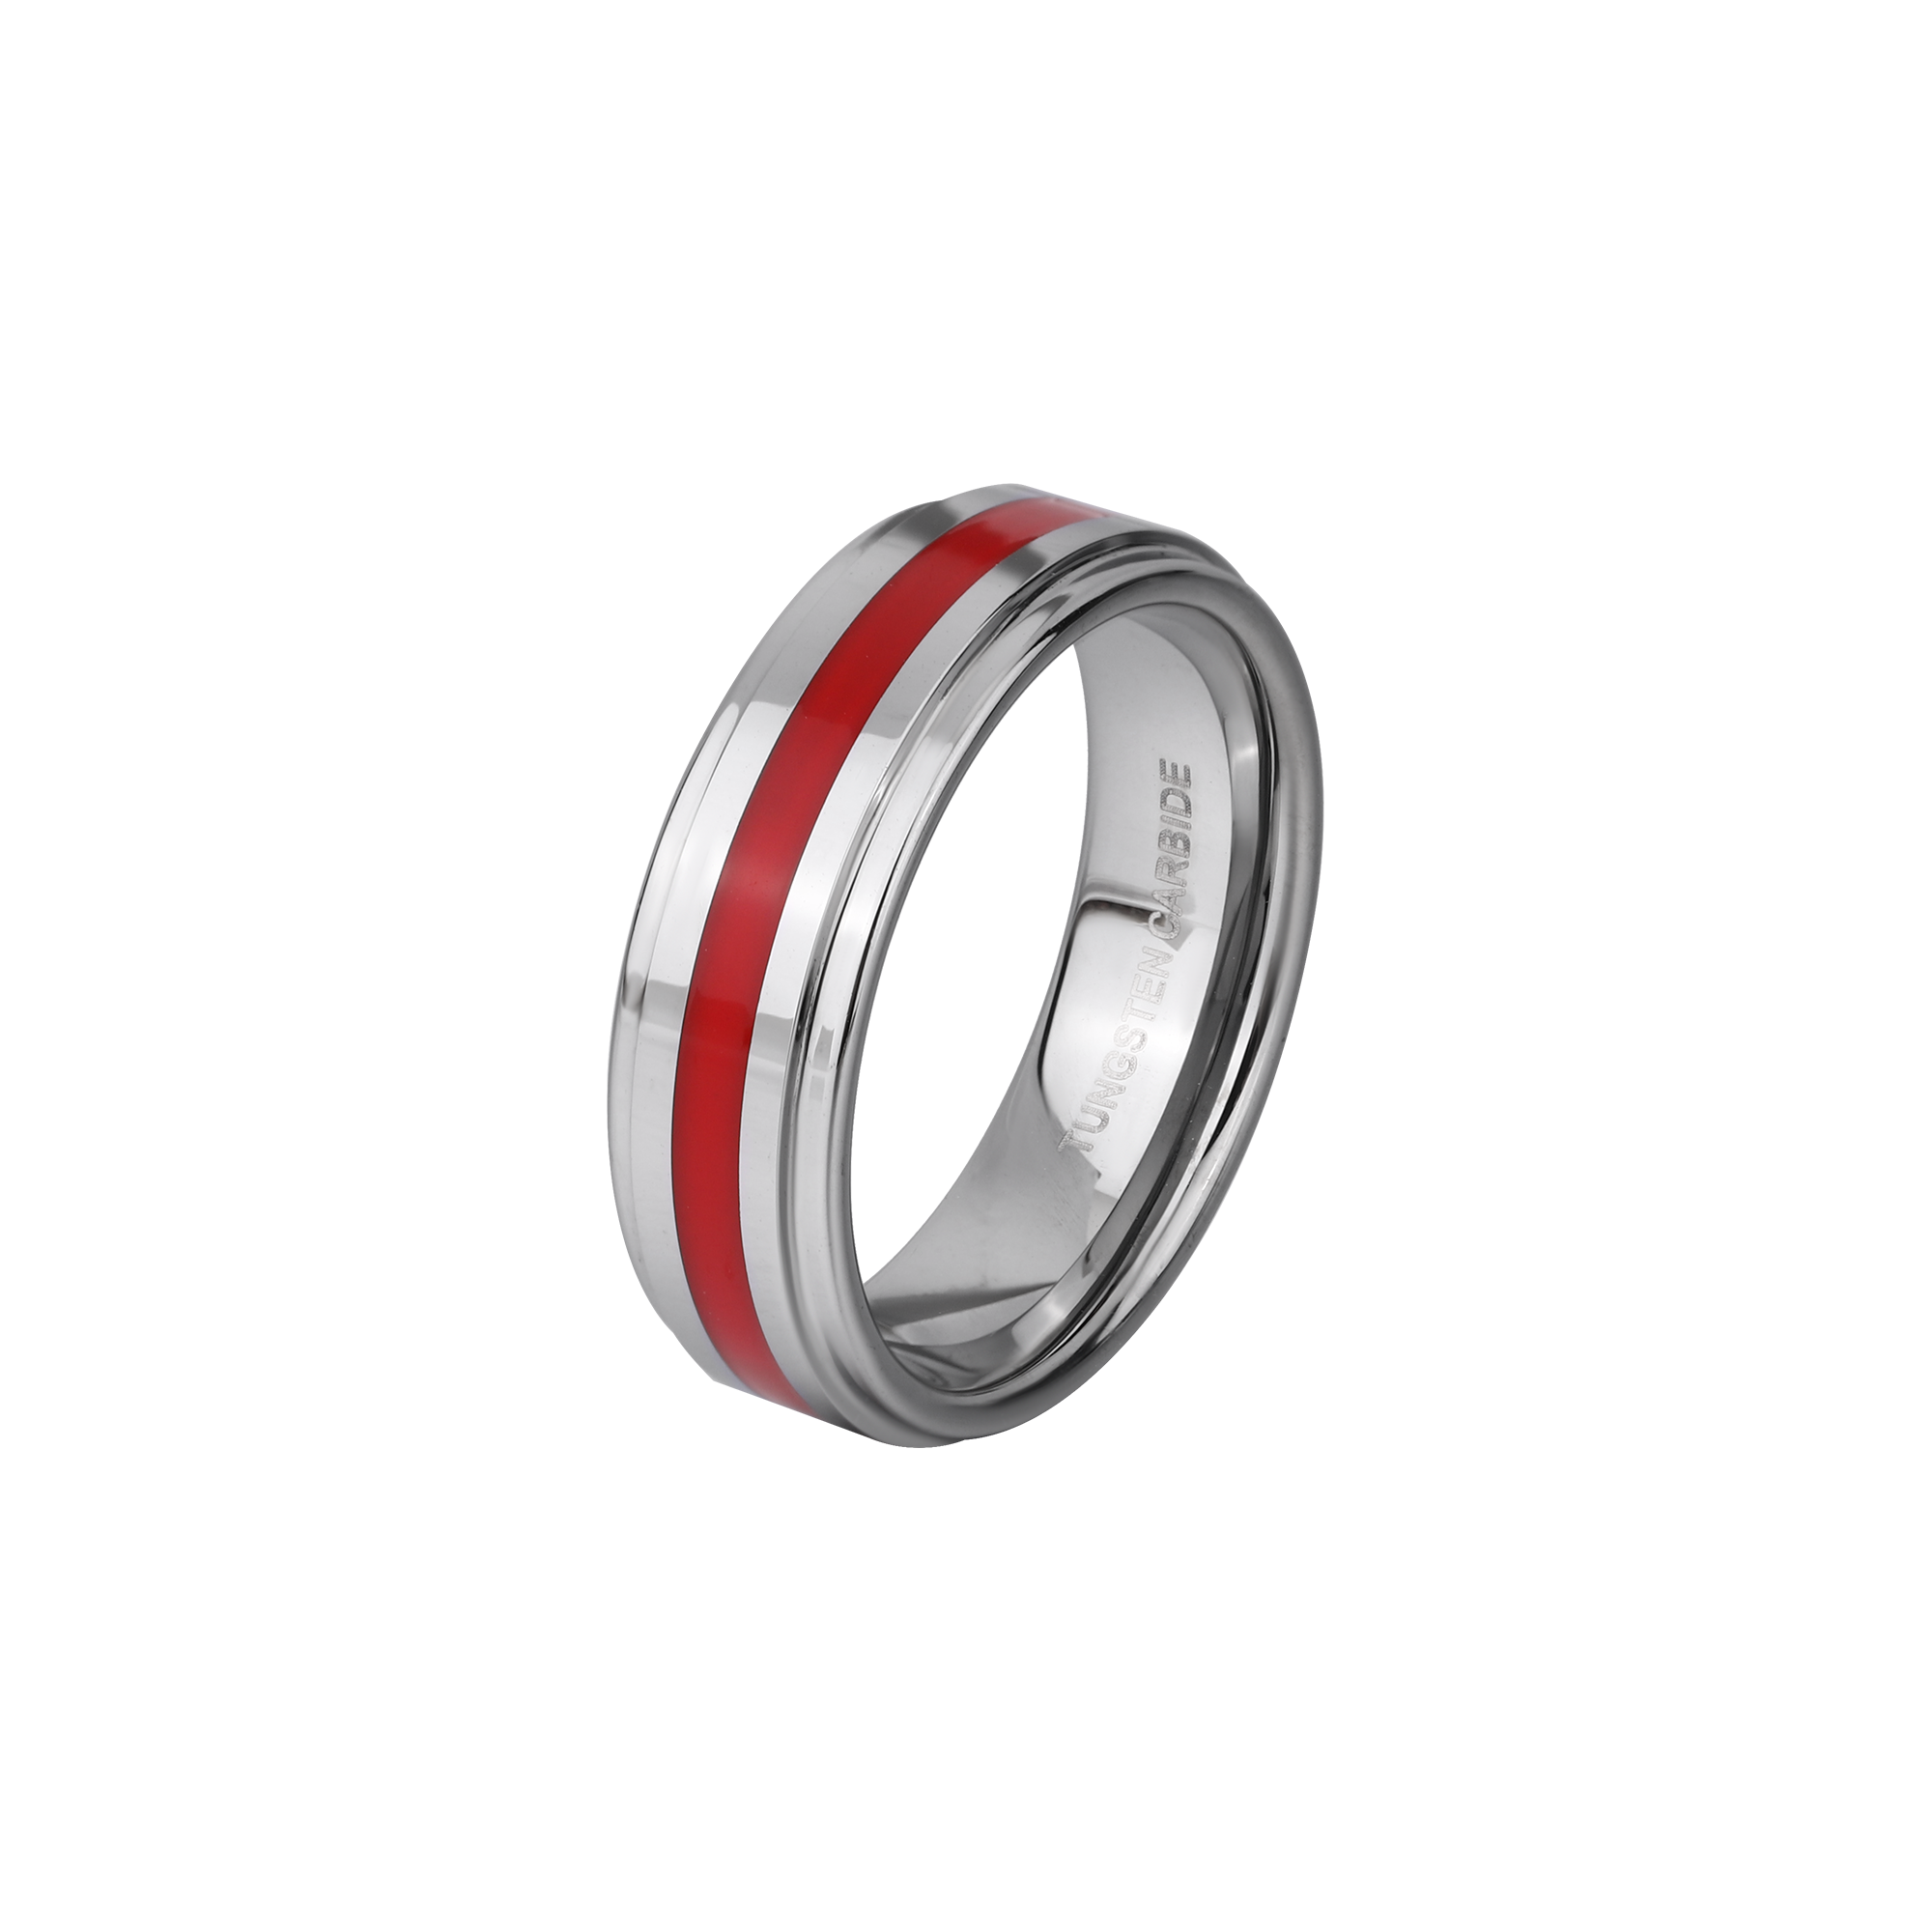 Red Thin Line Tungsten Carbide Ring KCLR 11